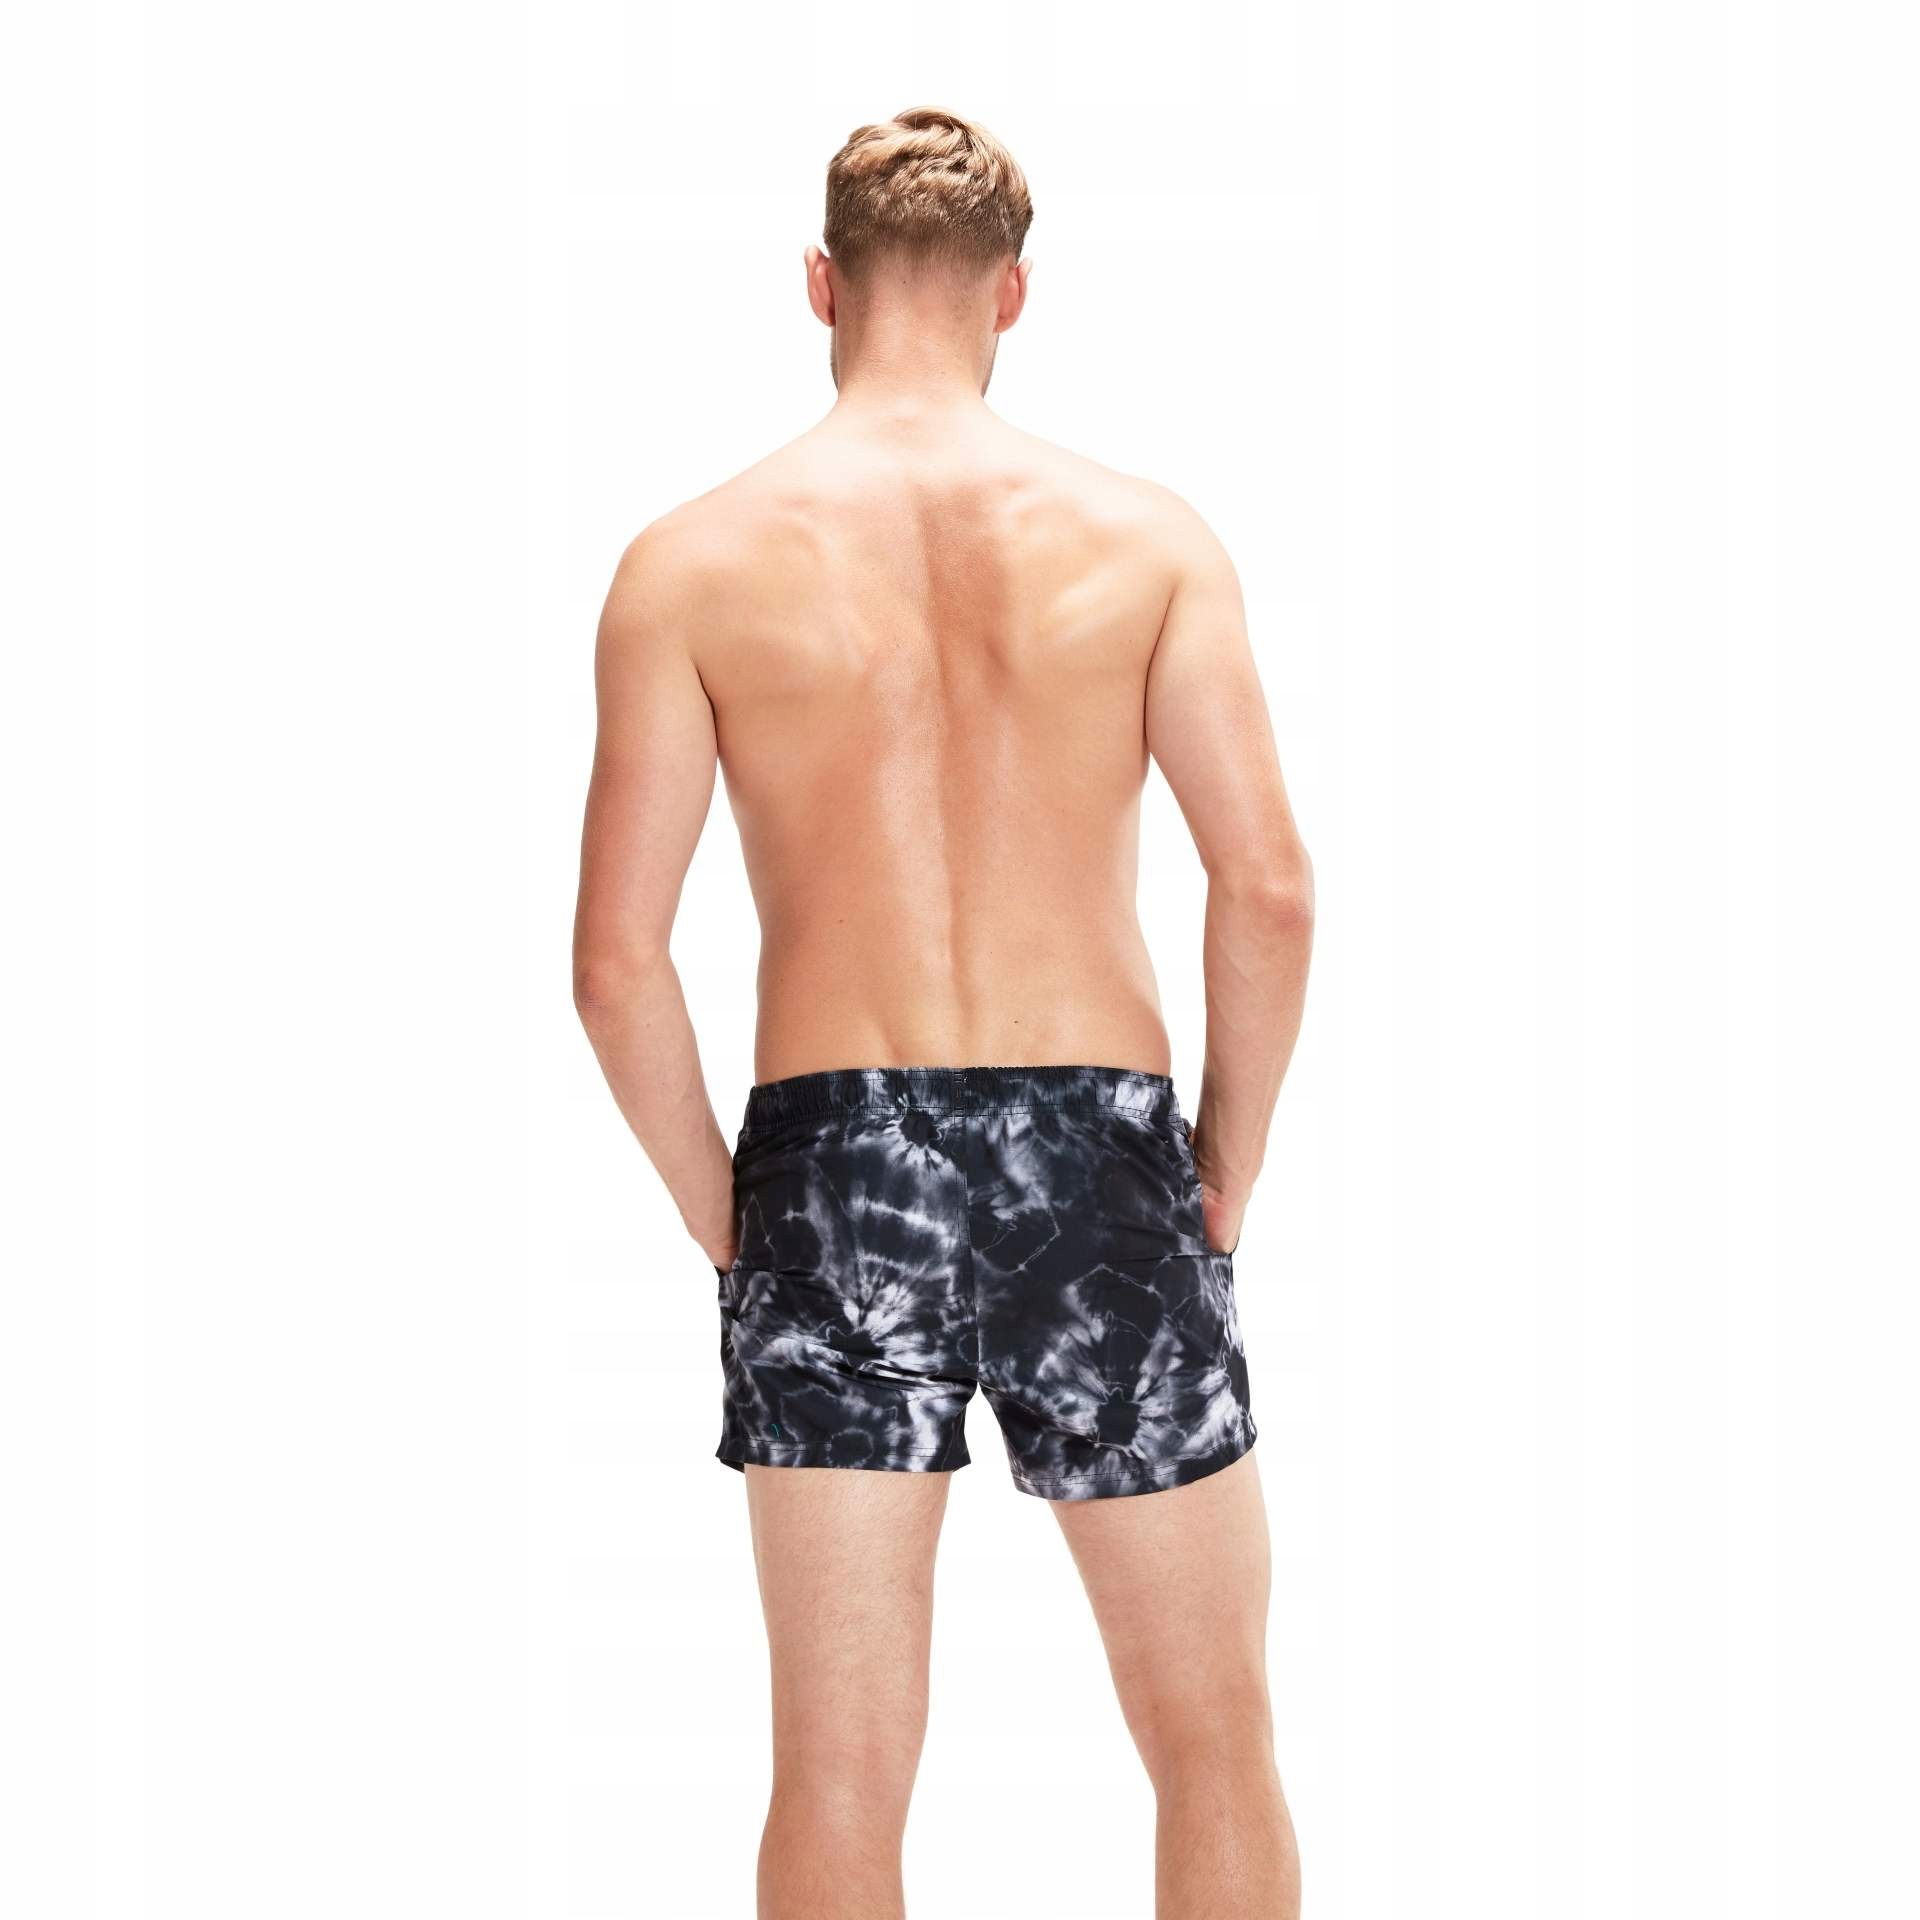 Spodenki szorty plażowe męskie Speedo Digital Print rozmiar M